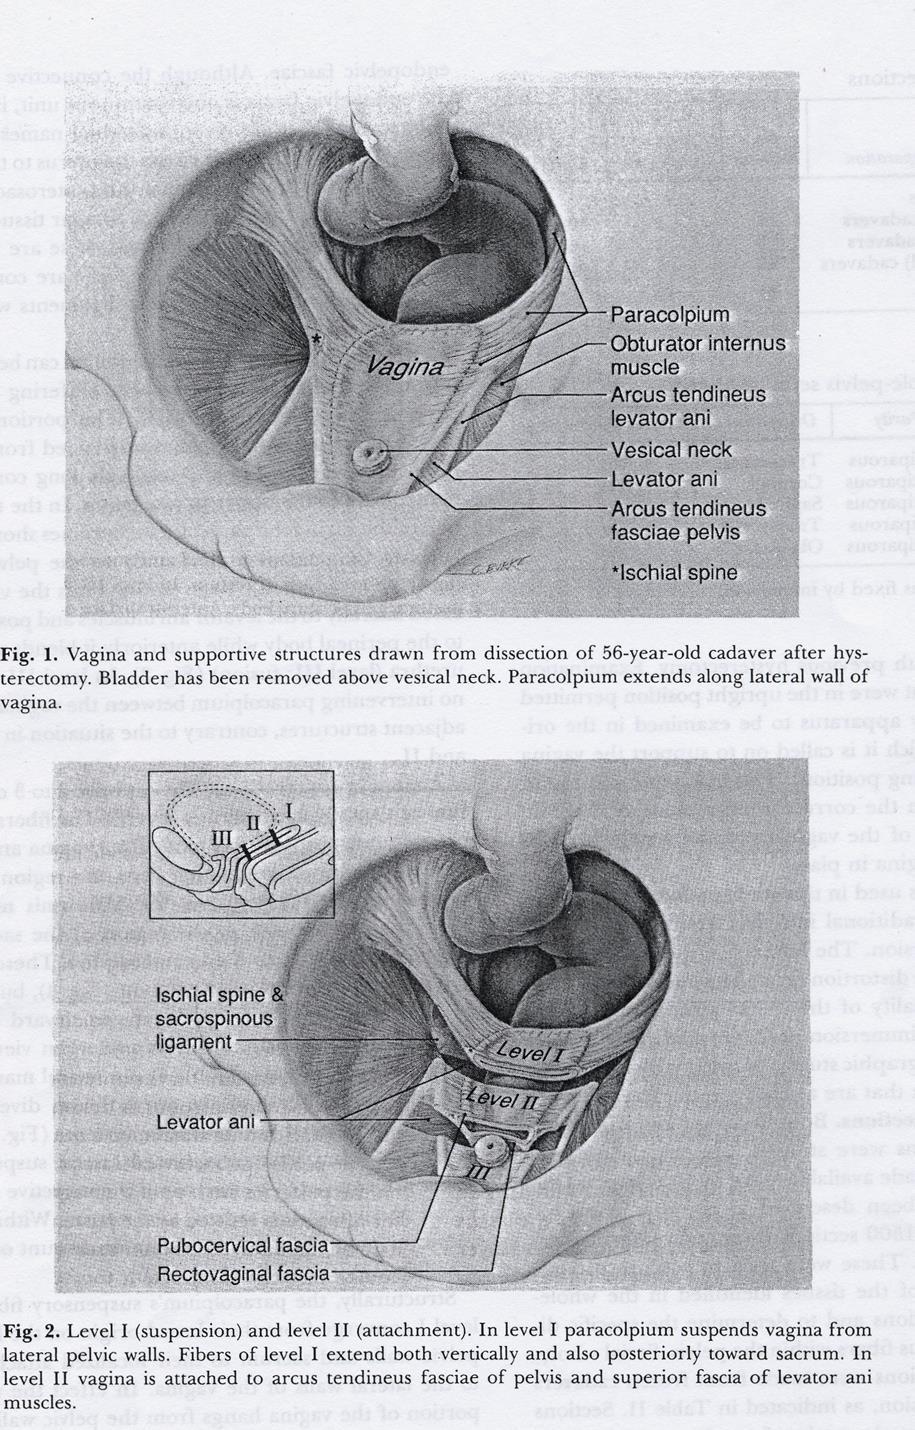 Level I - suspension Den övre delen av vagina, apex, stöds från bäckenväggarna av Lig.